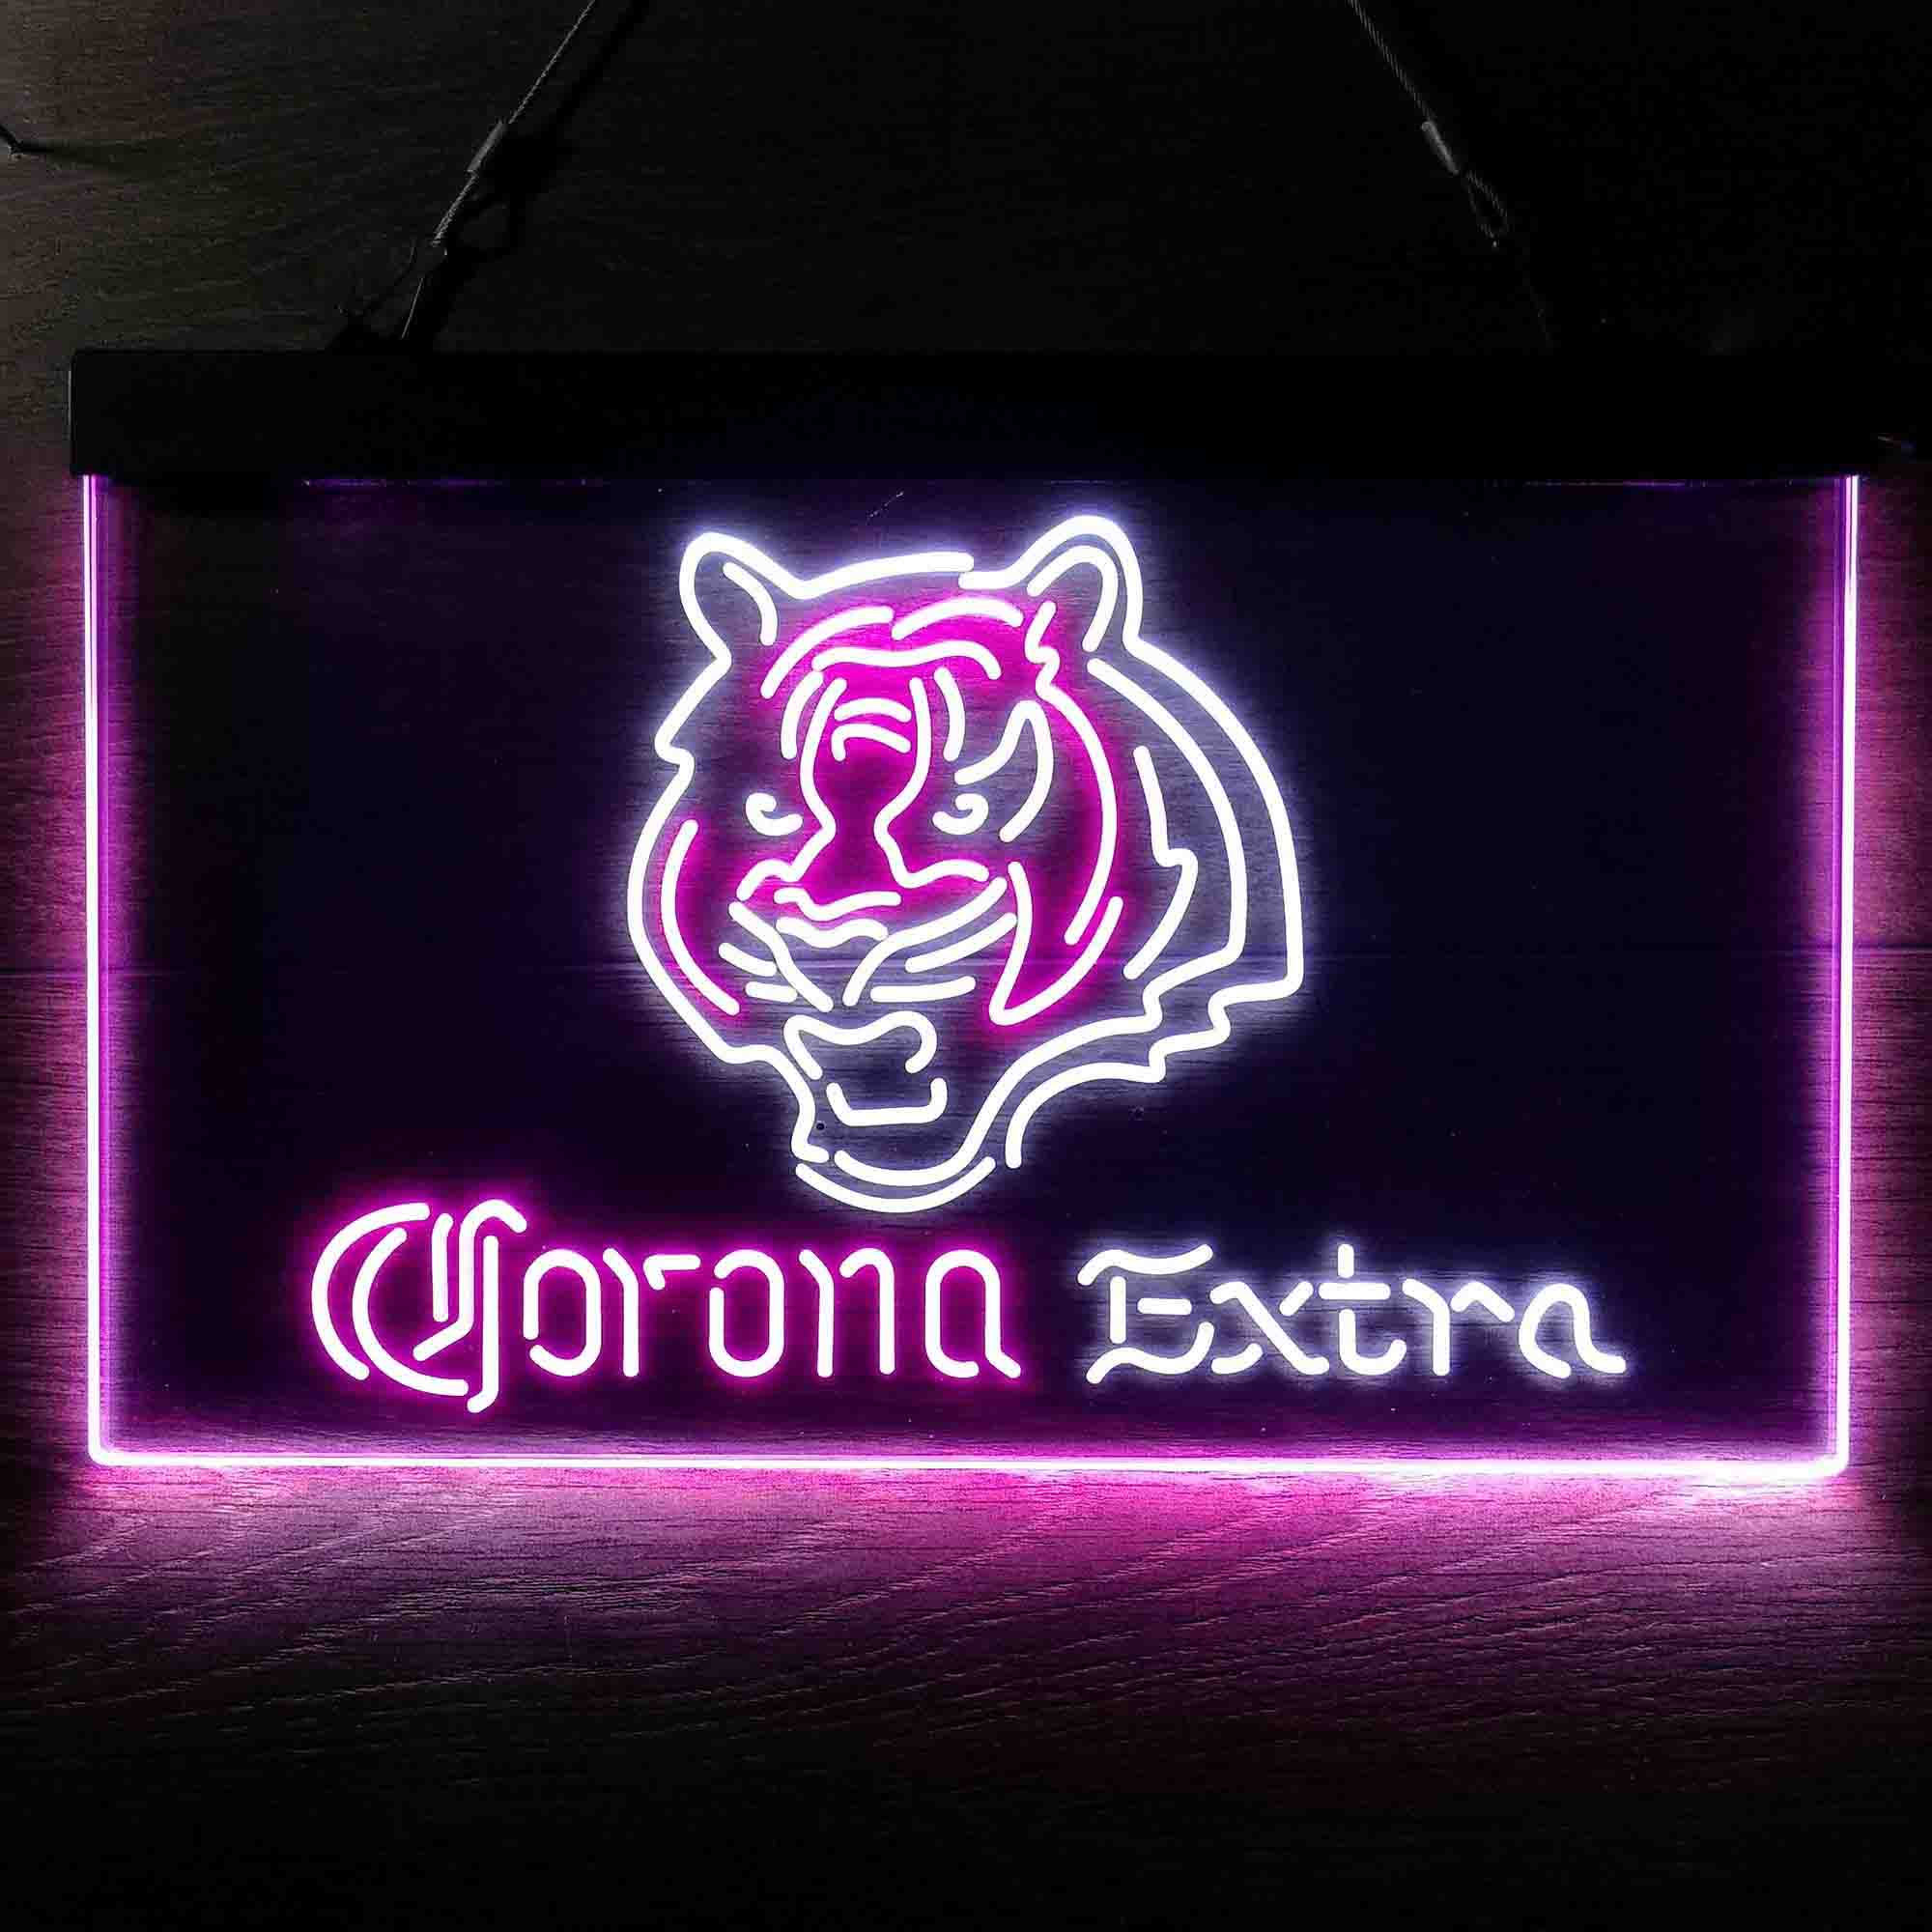 Corona Extra Bar Cincinnati Bengals Est. 1968 LED Neon Sign